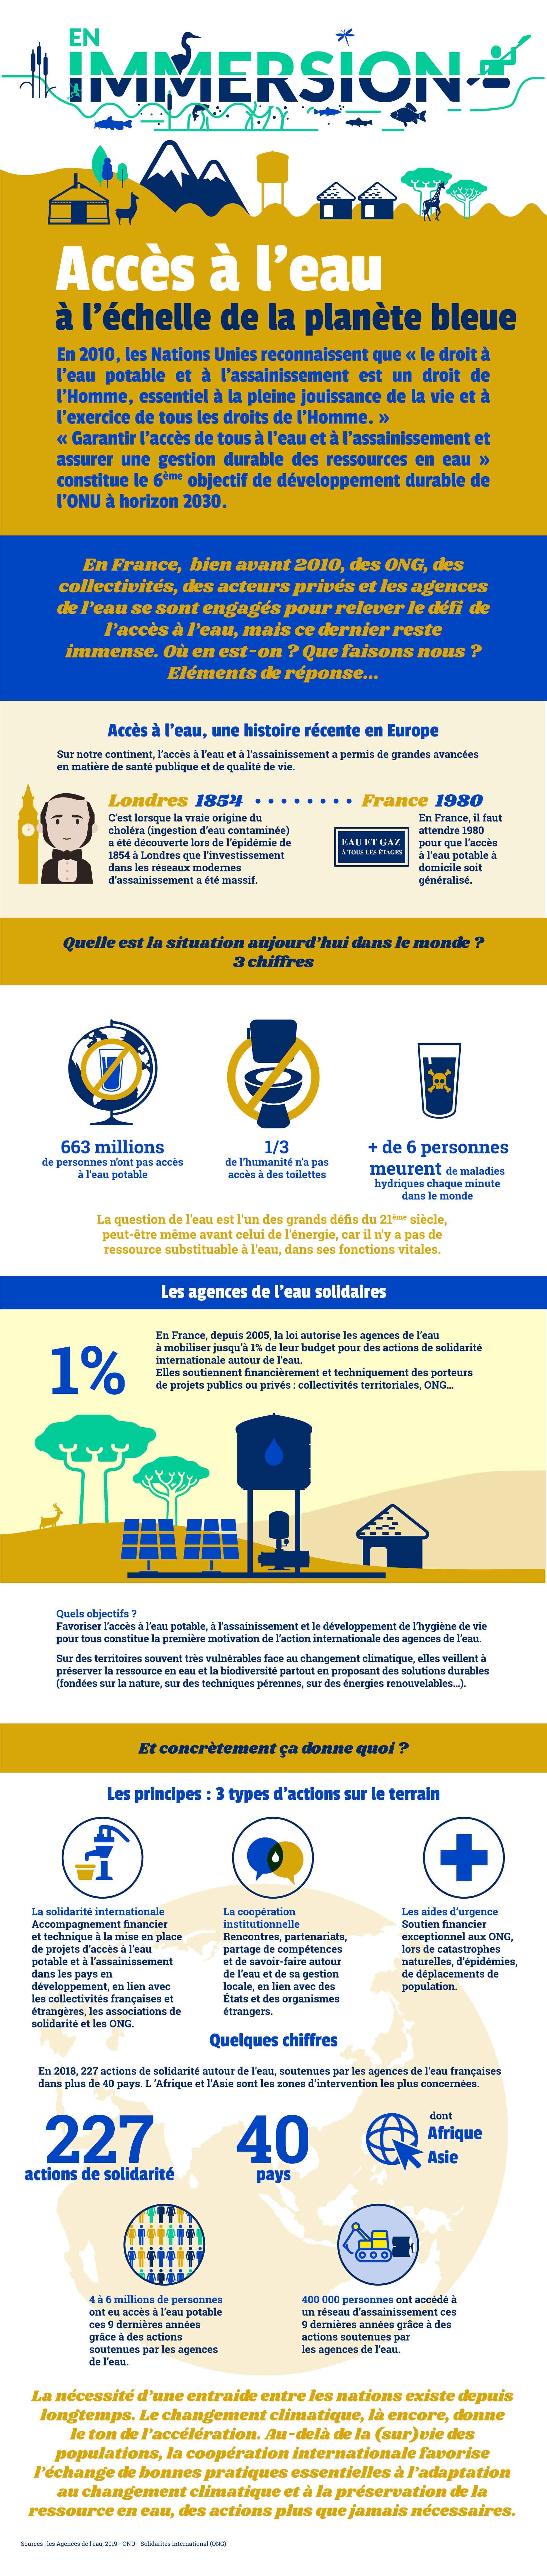 infographie-solidarite-agences_de_leau-copie.jpg